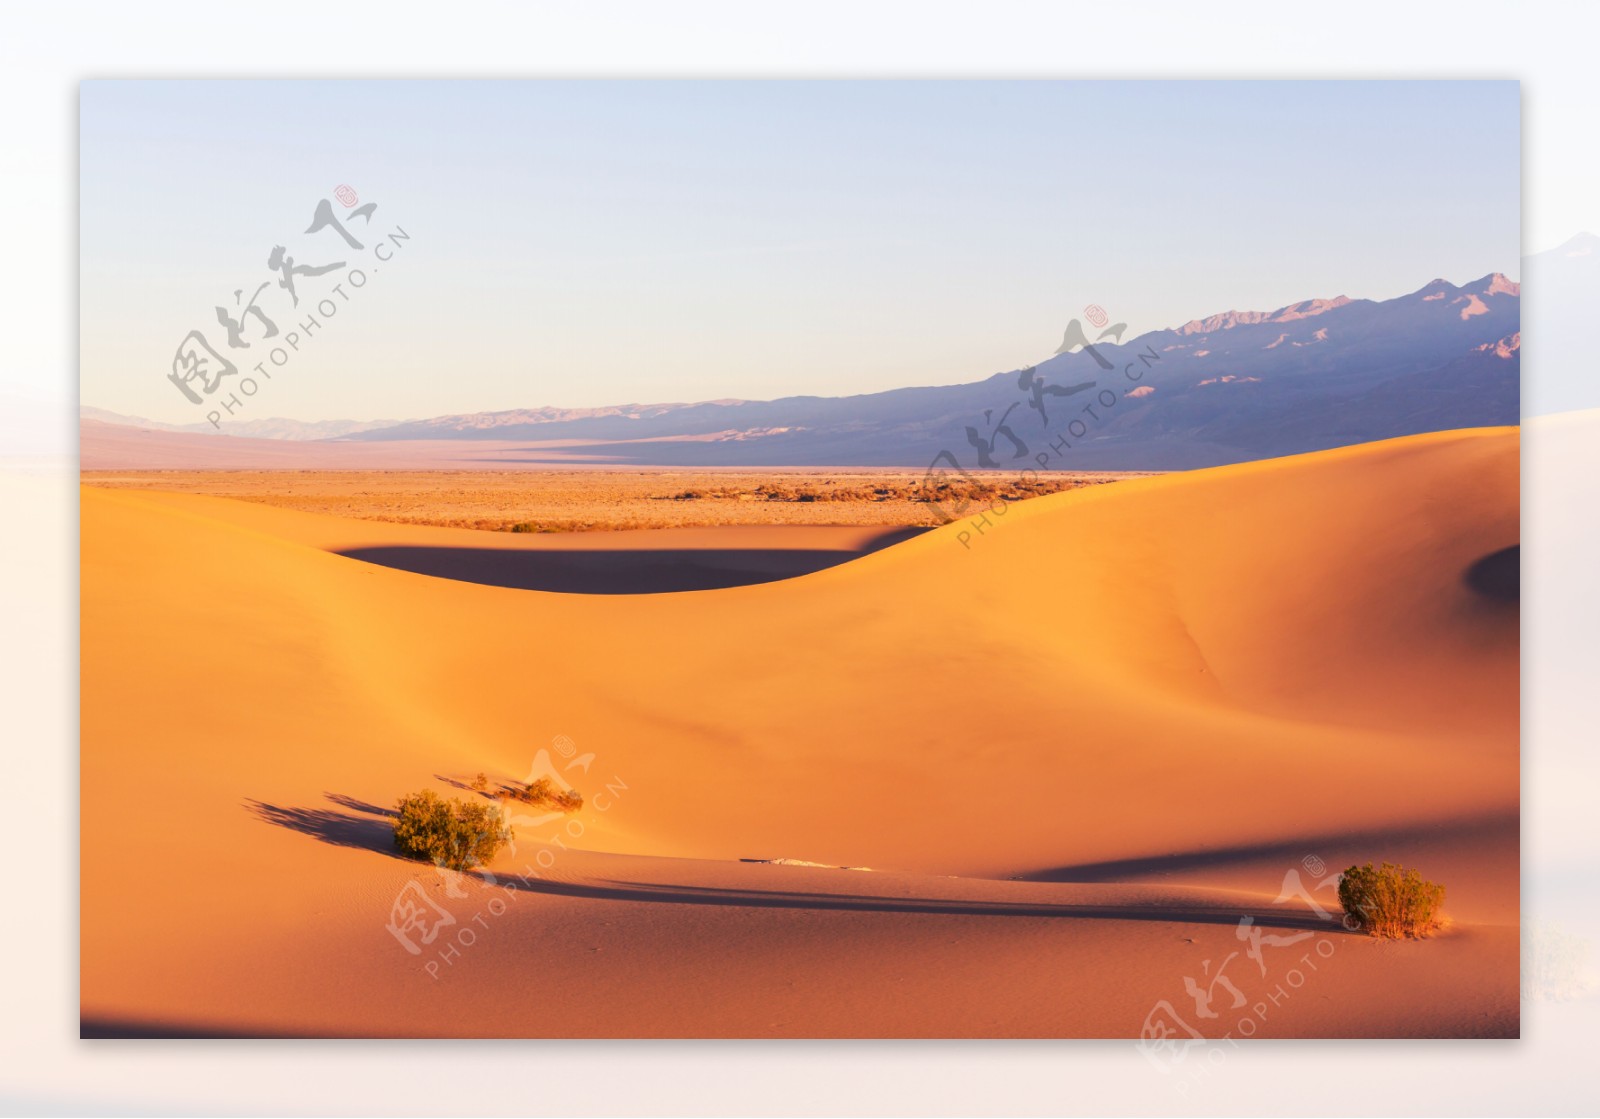 日暮下的沙漠美景图片